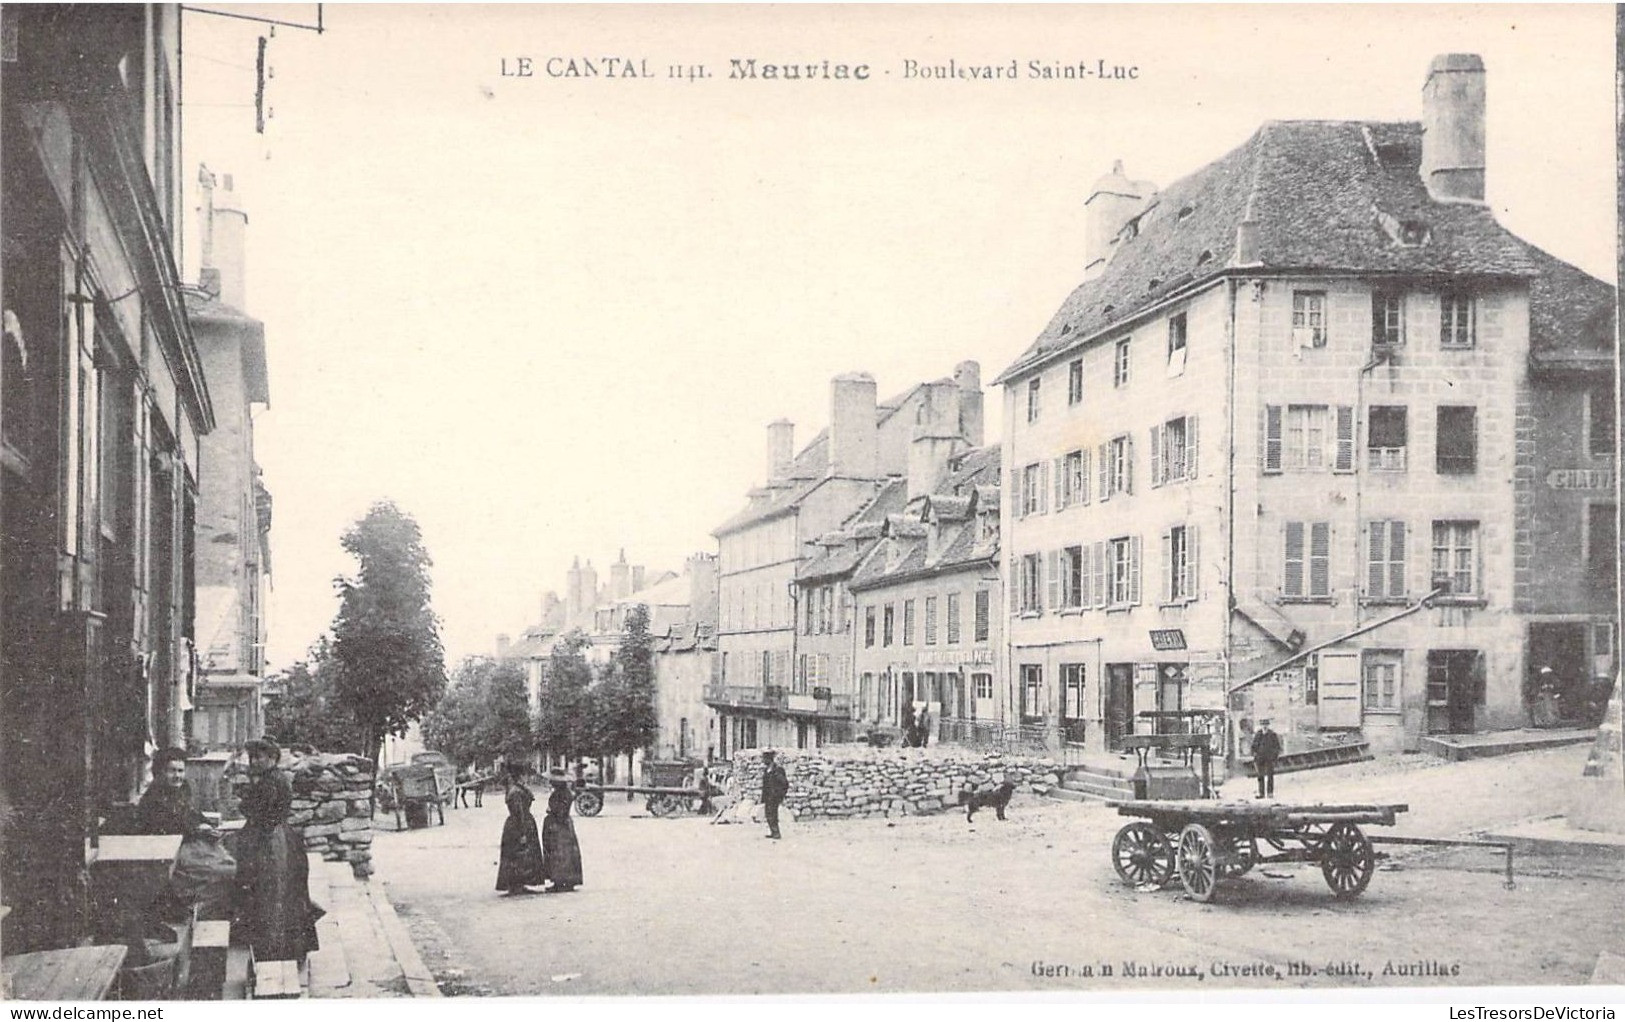 France - Le Cantal - Mauviac - Boulevard Saint Luc - Germain Malroux - Animé - Carte Postale Ancienne - Mauriac